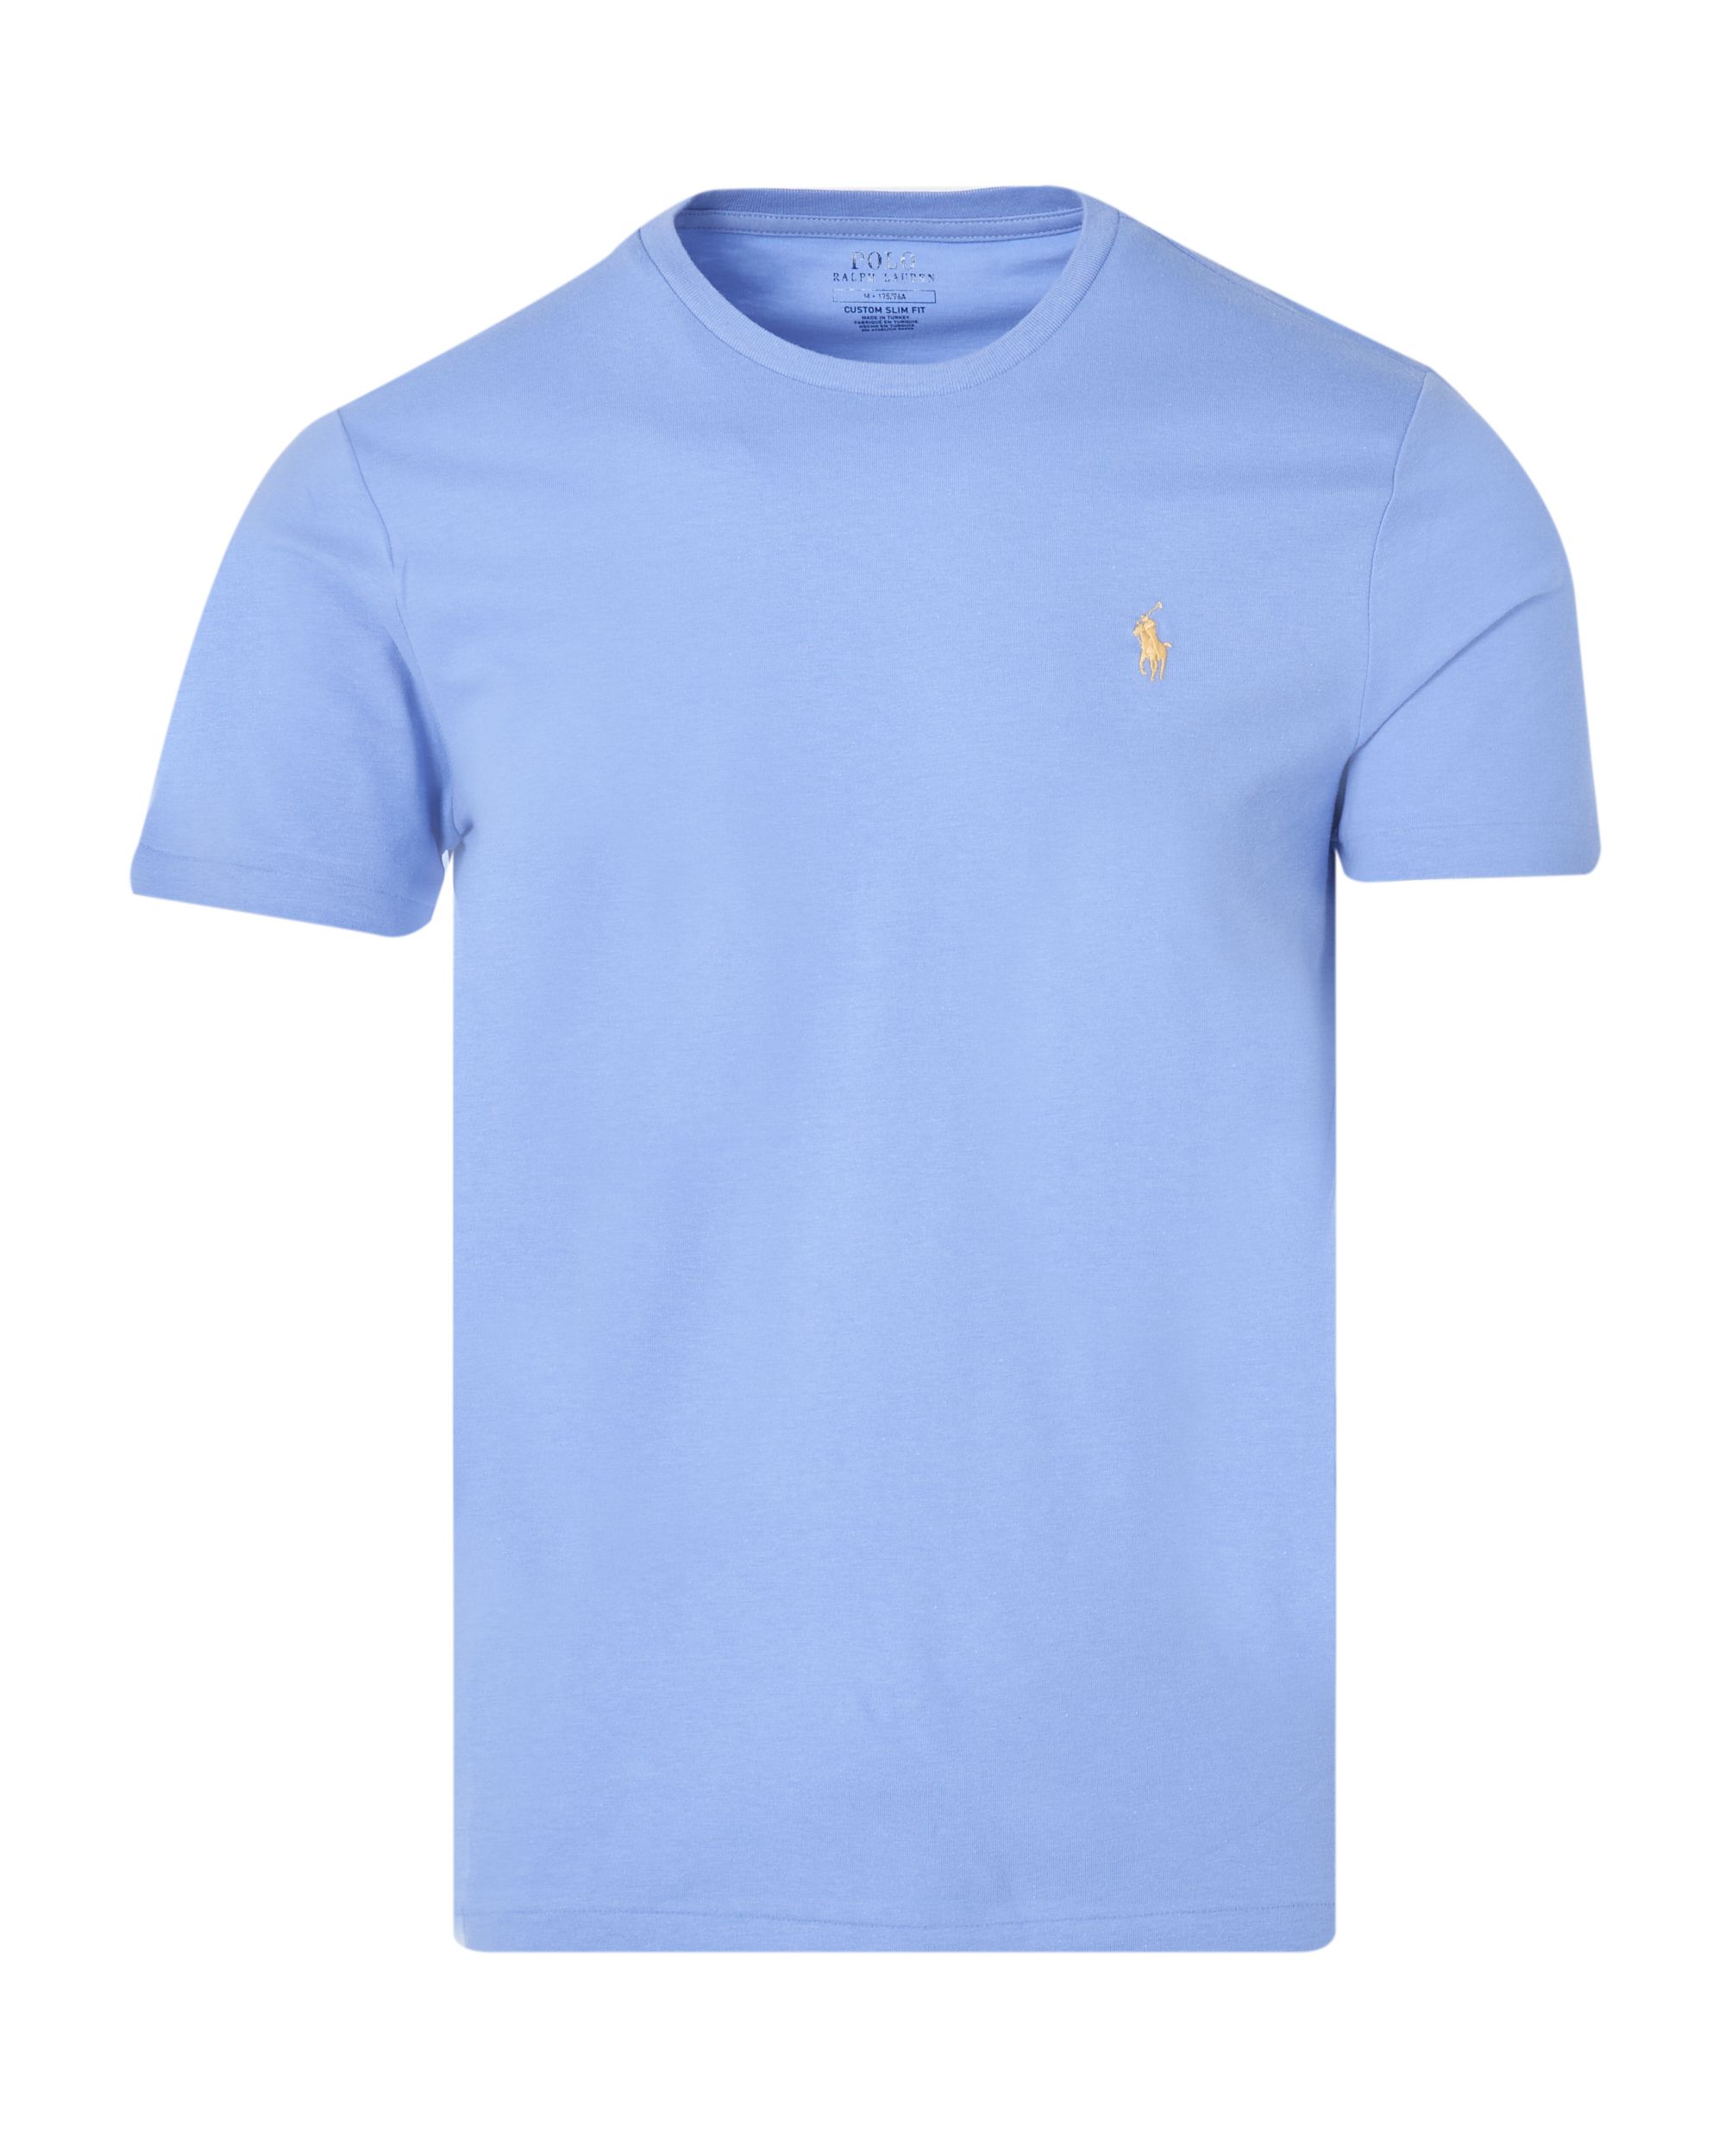 Polo Ralph Lauren T-shirt KM Licht blauw 083433-001-L